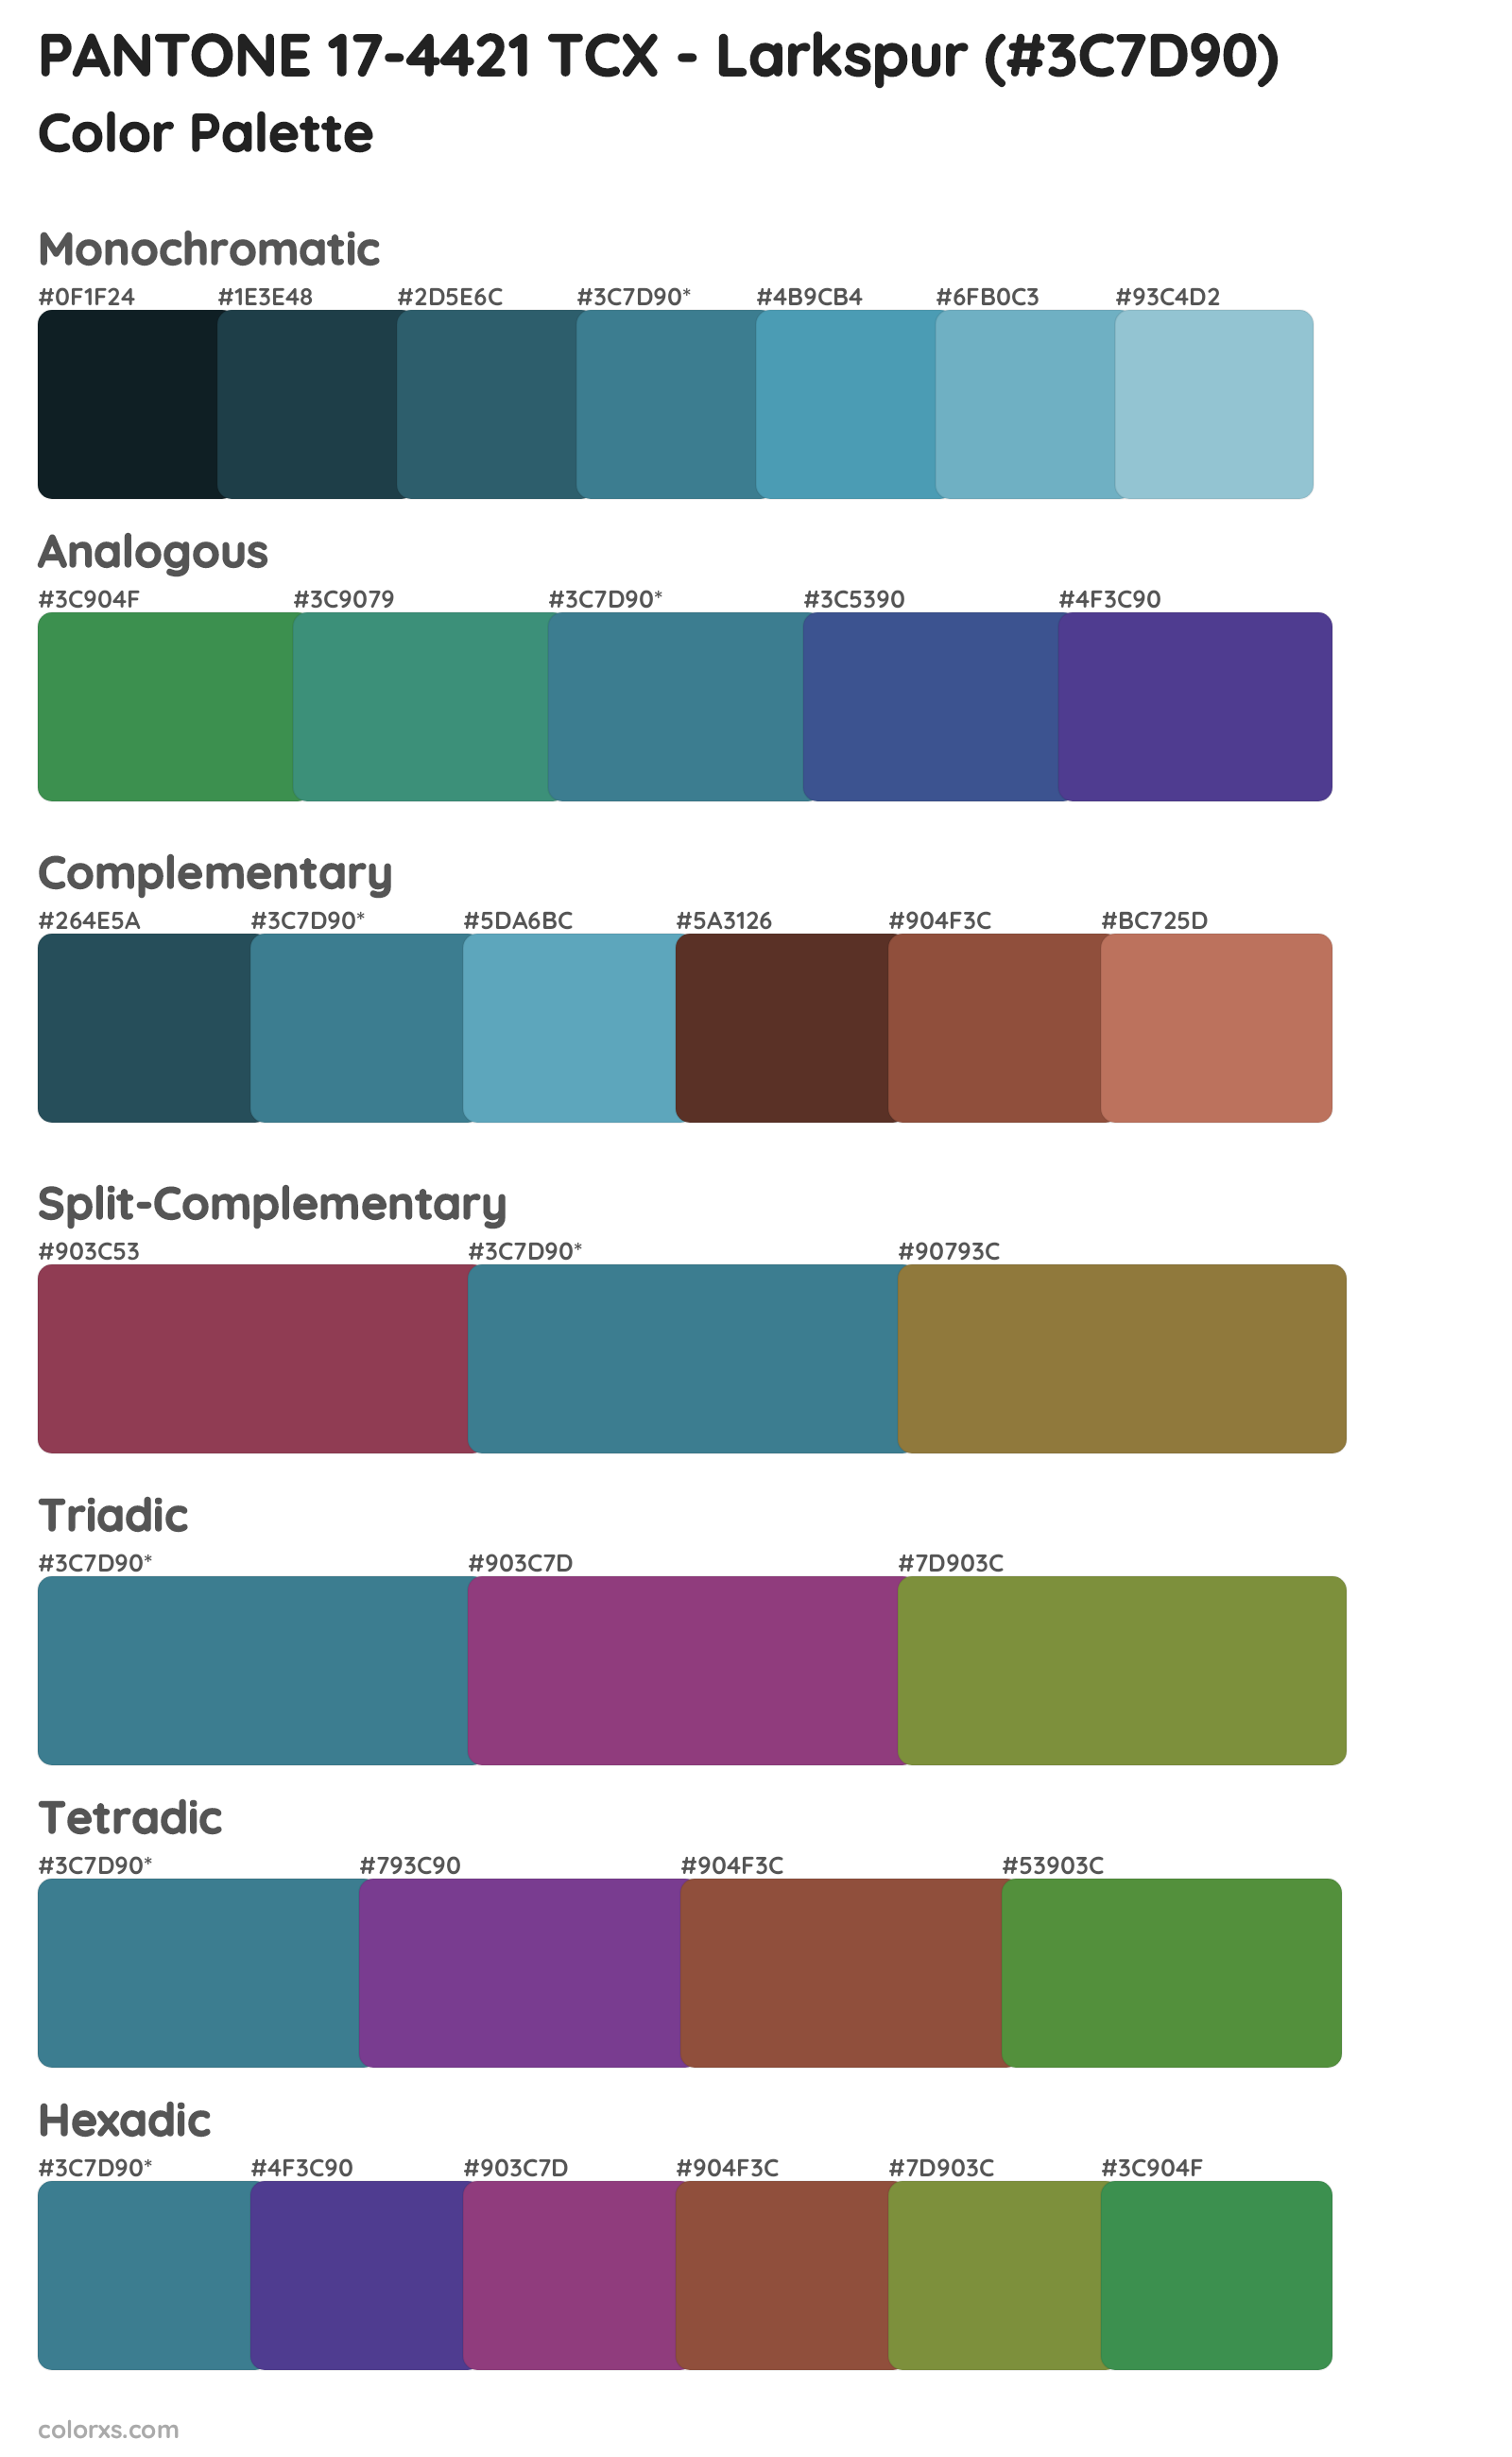 PANTONE 17-4421 TCX - Larkspur Color Scheme Palettes